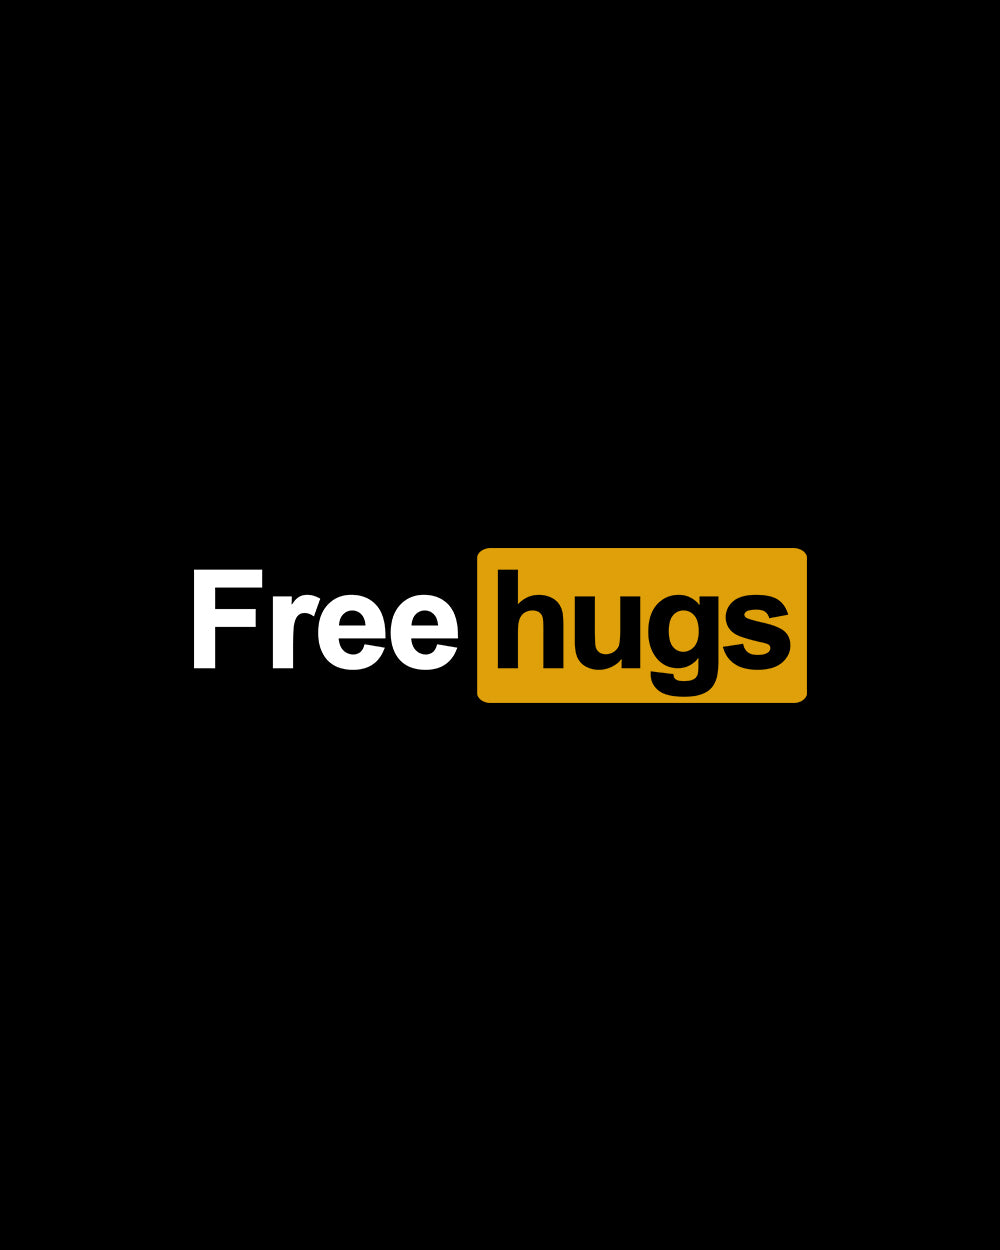 Free Hugs Hoodie Europe Online #colour_black